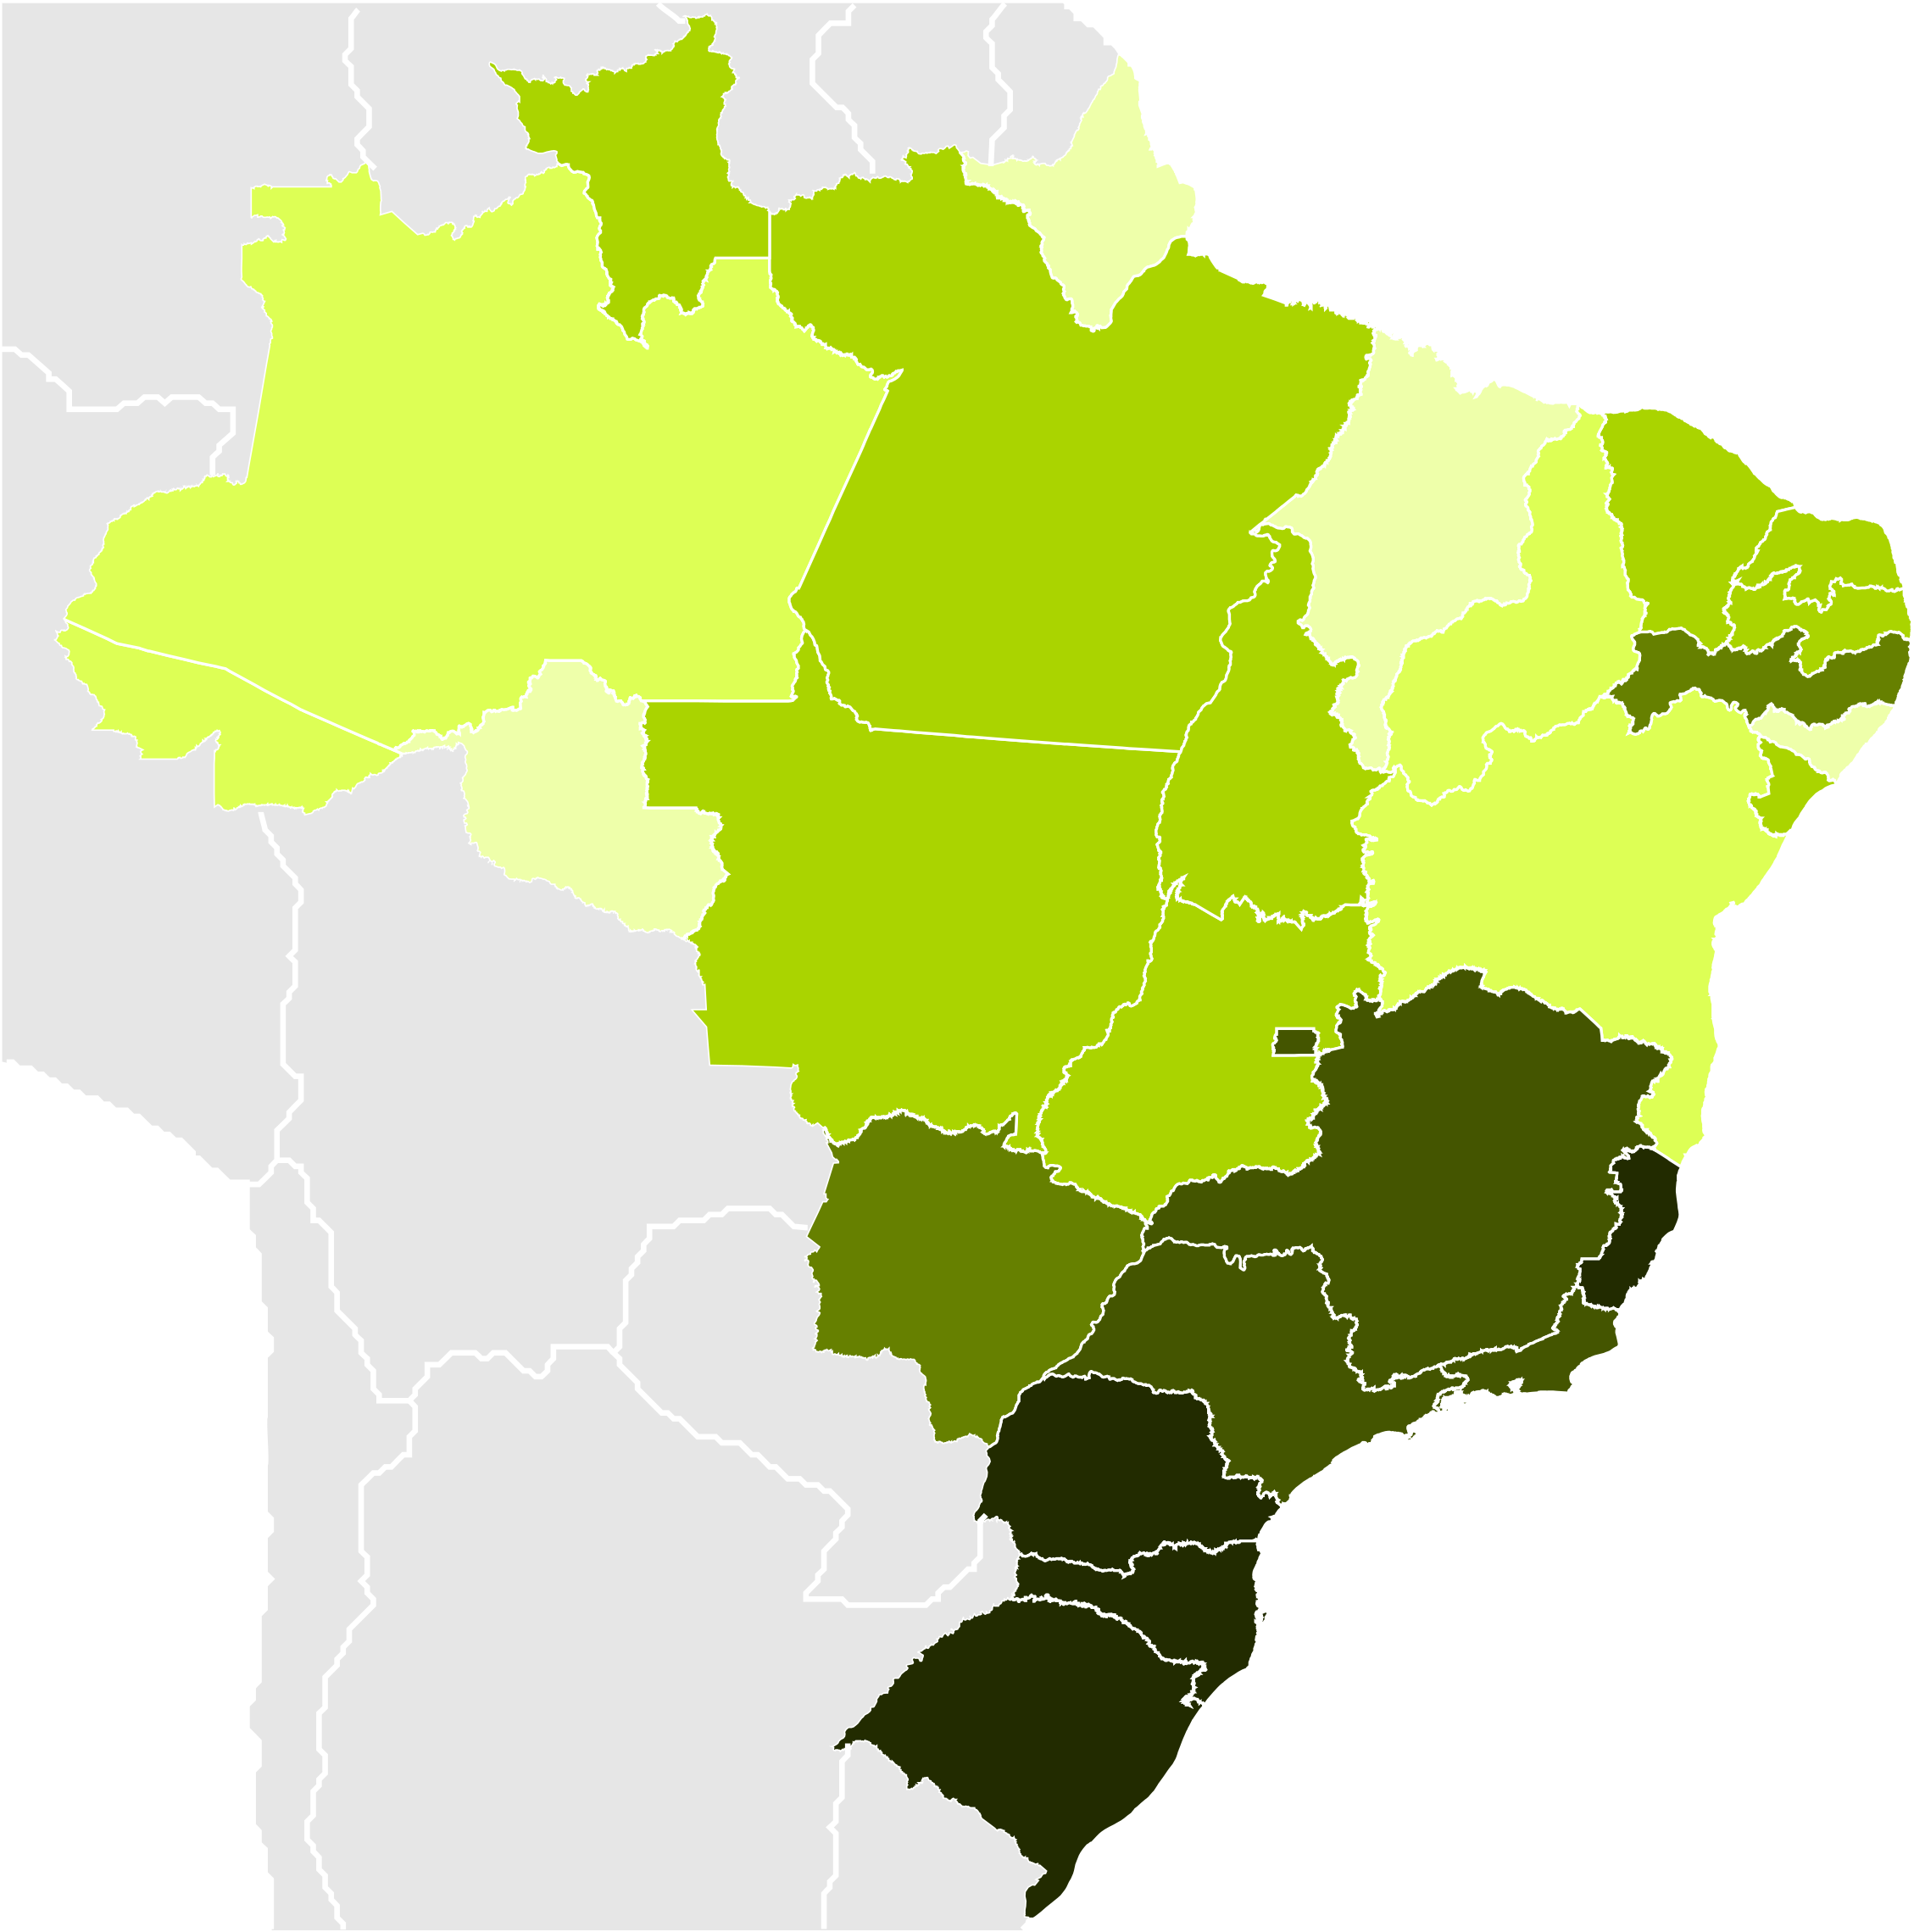 Brazilian States By Infant Mortality - Federative Unit Of Brazil (2598x2291)